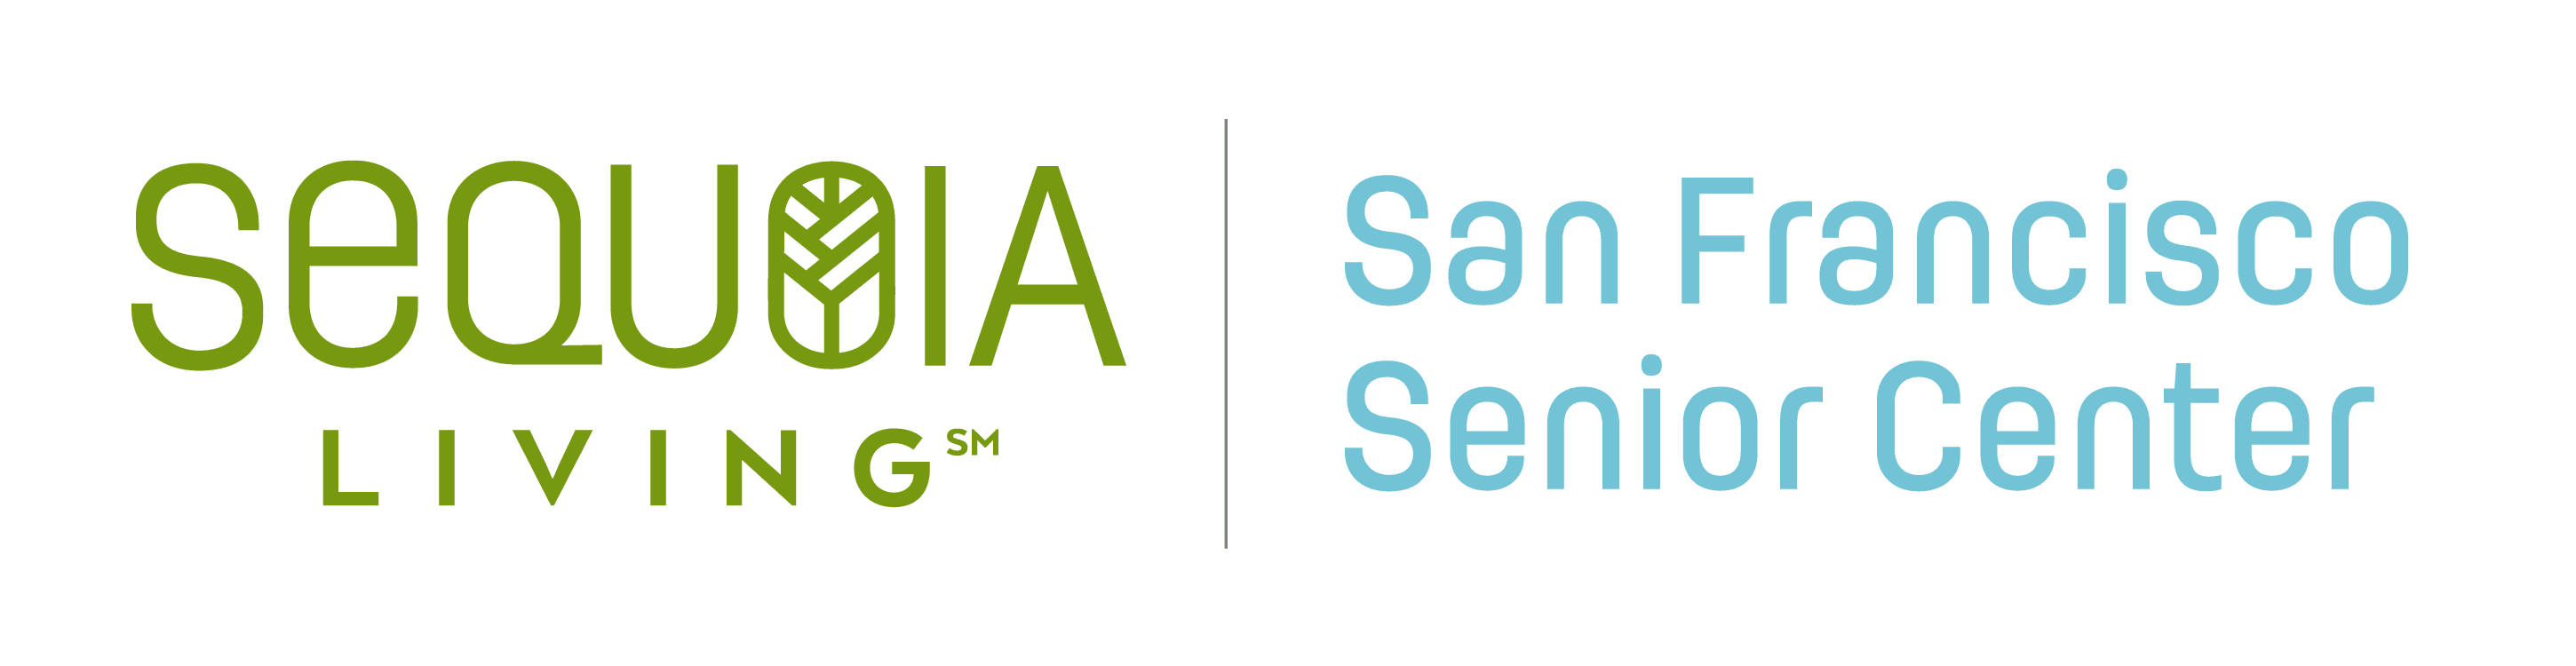 Sequoia Living - Community Services logo. Sequoia living. Community services.